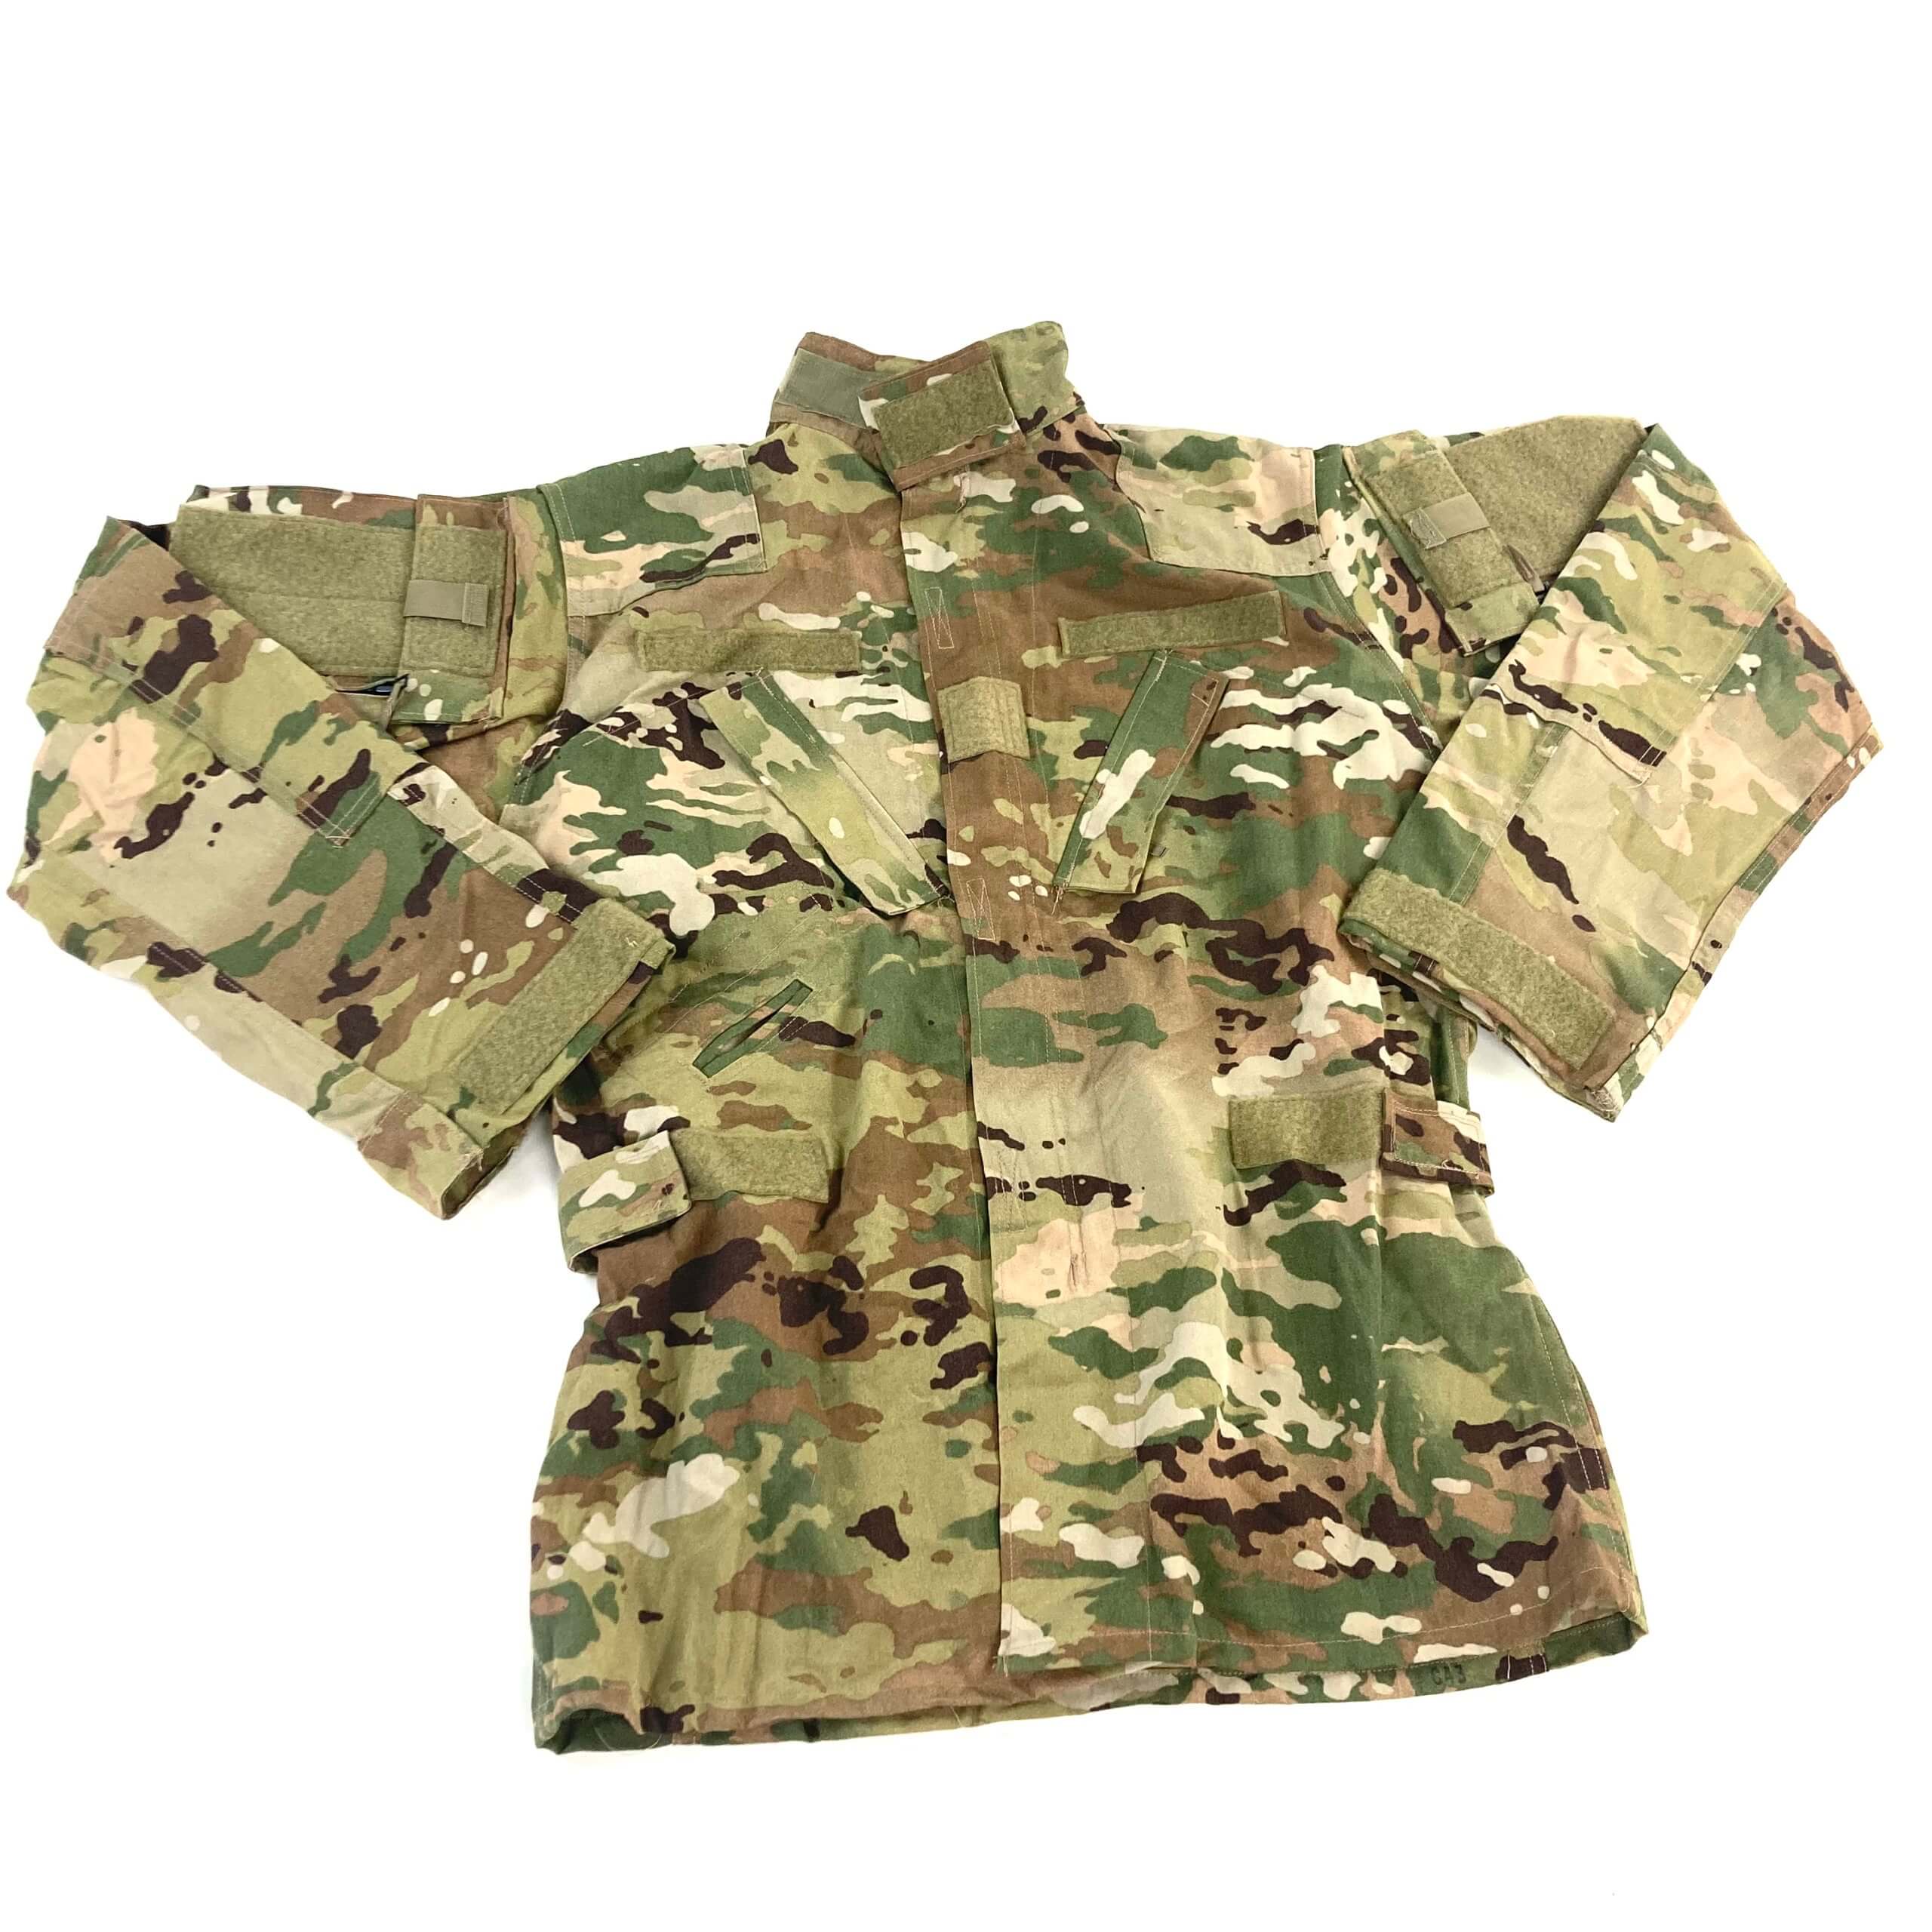 USGI Aircrew Combat Shirt, OCP - Medium Long, New